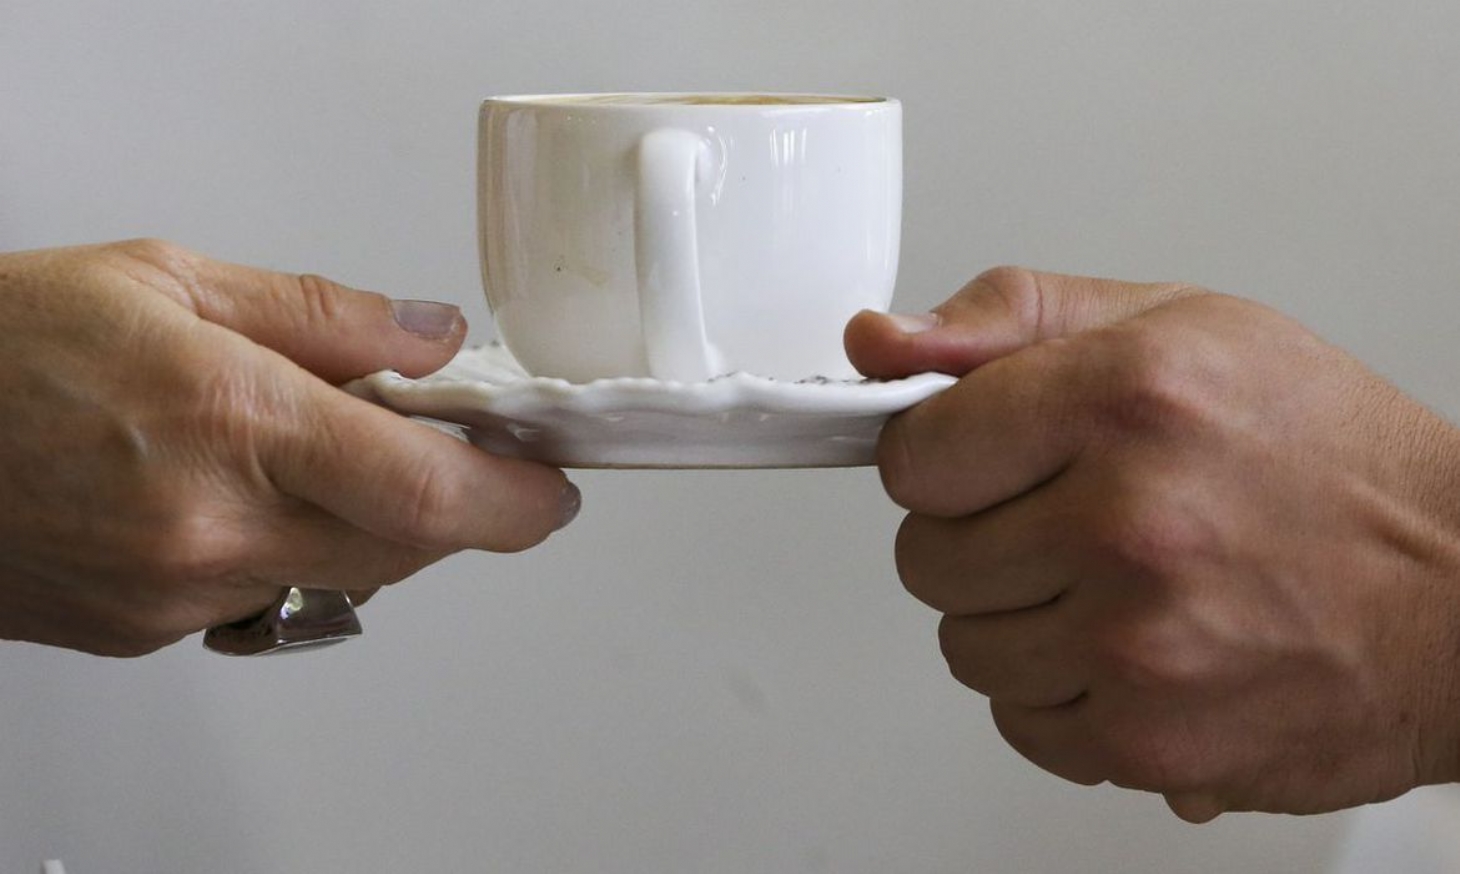 Pandemia mudou consumo de café, dizem especialistas do setor | Jornal da Orla